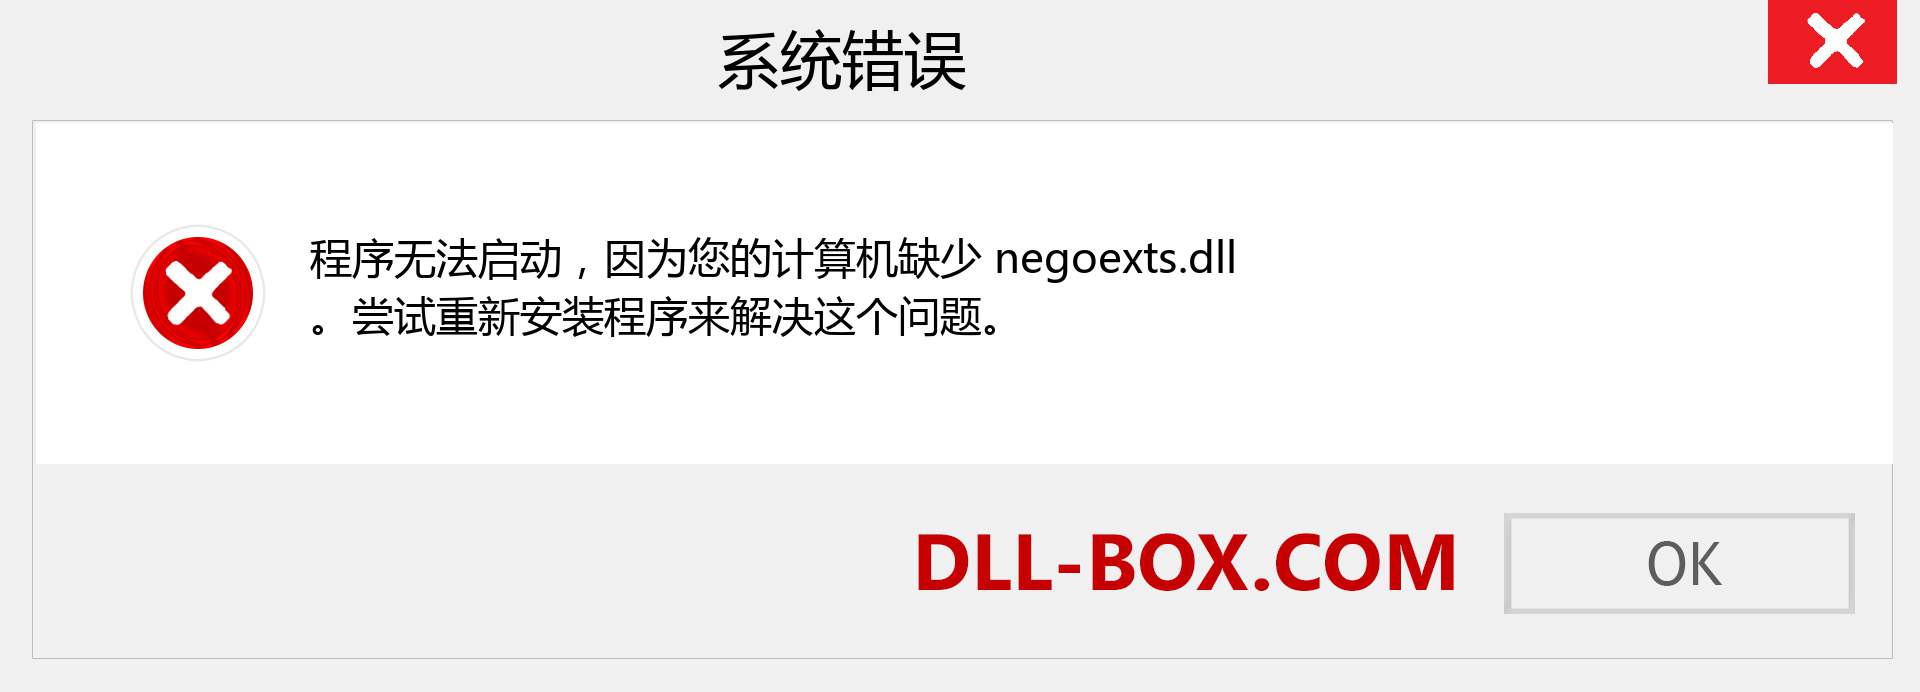 negoexts.dll 文件丢失？。 适用于 Windows 7、8、10 的下载 - 修复 Windows、照片、图像上的 negoexts dll 丢失错误